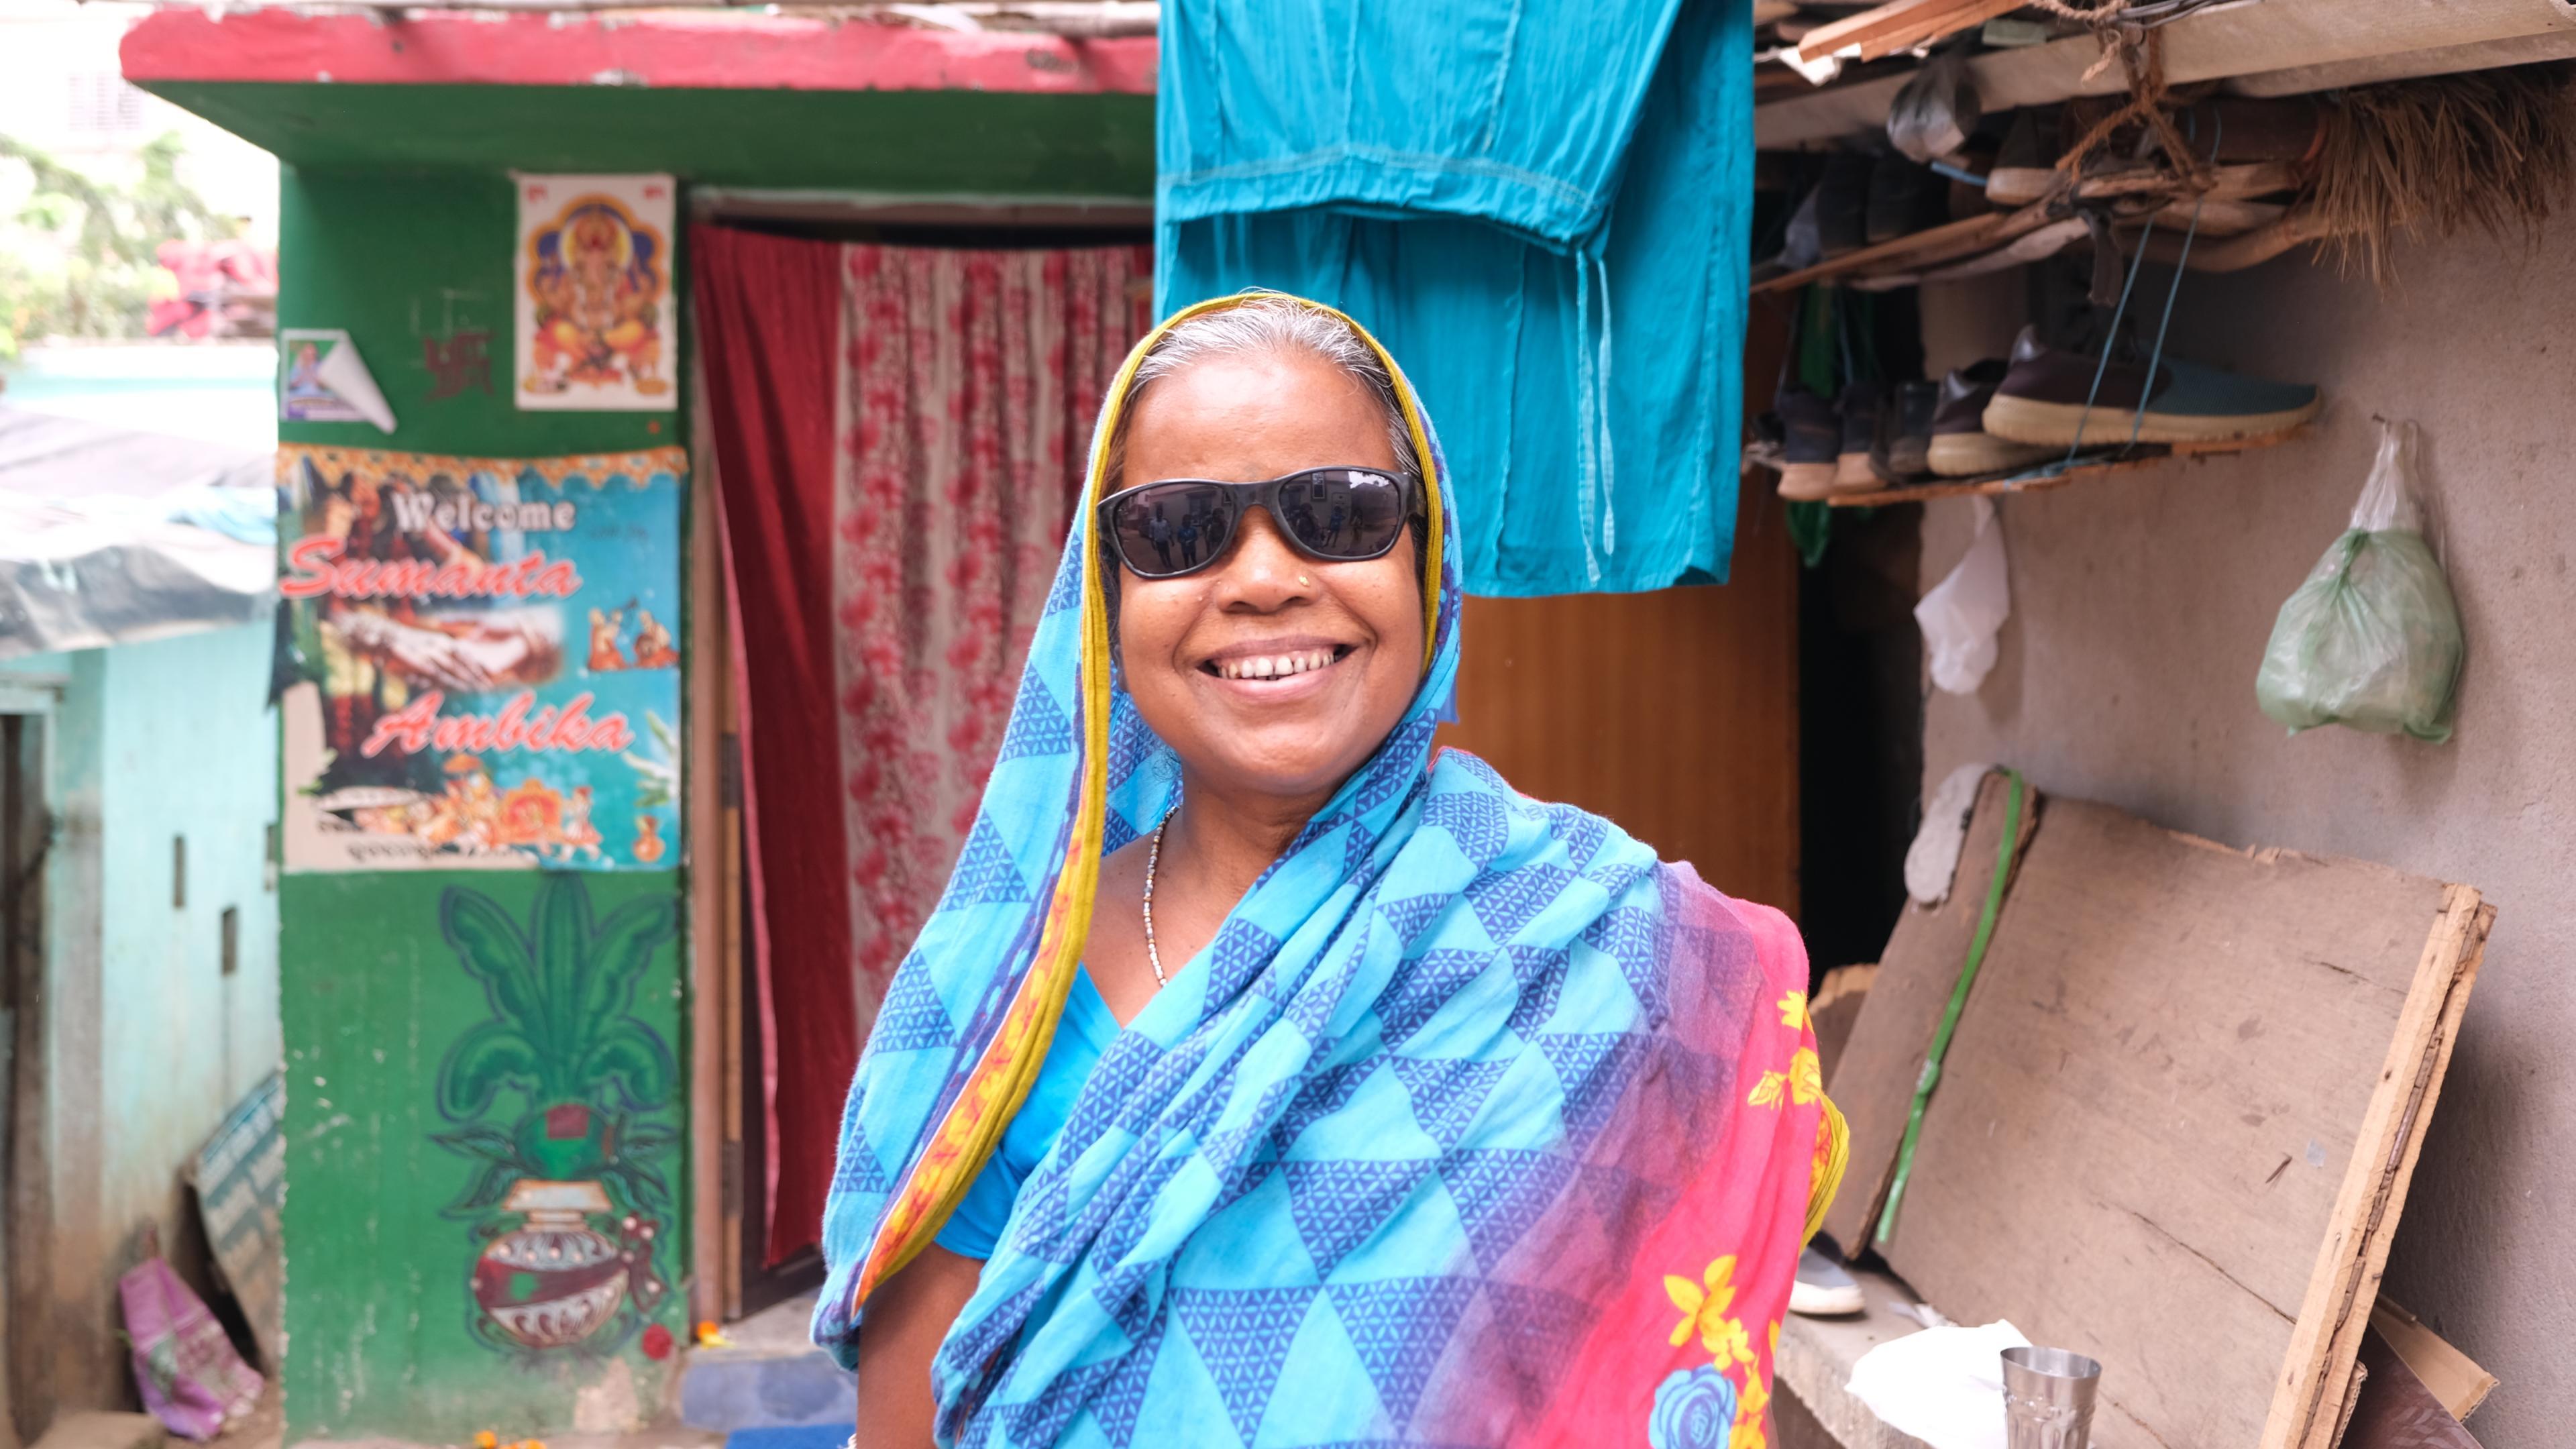 Traditionell gekleidete Frau aus Indien, trägt Sonnenbrille